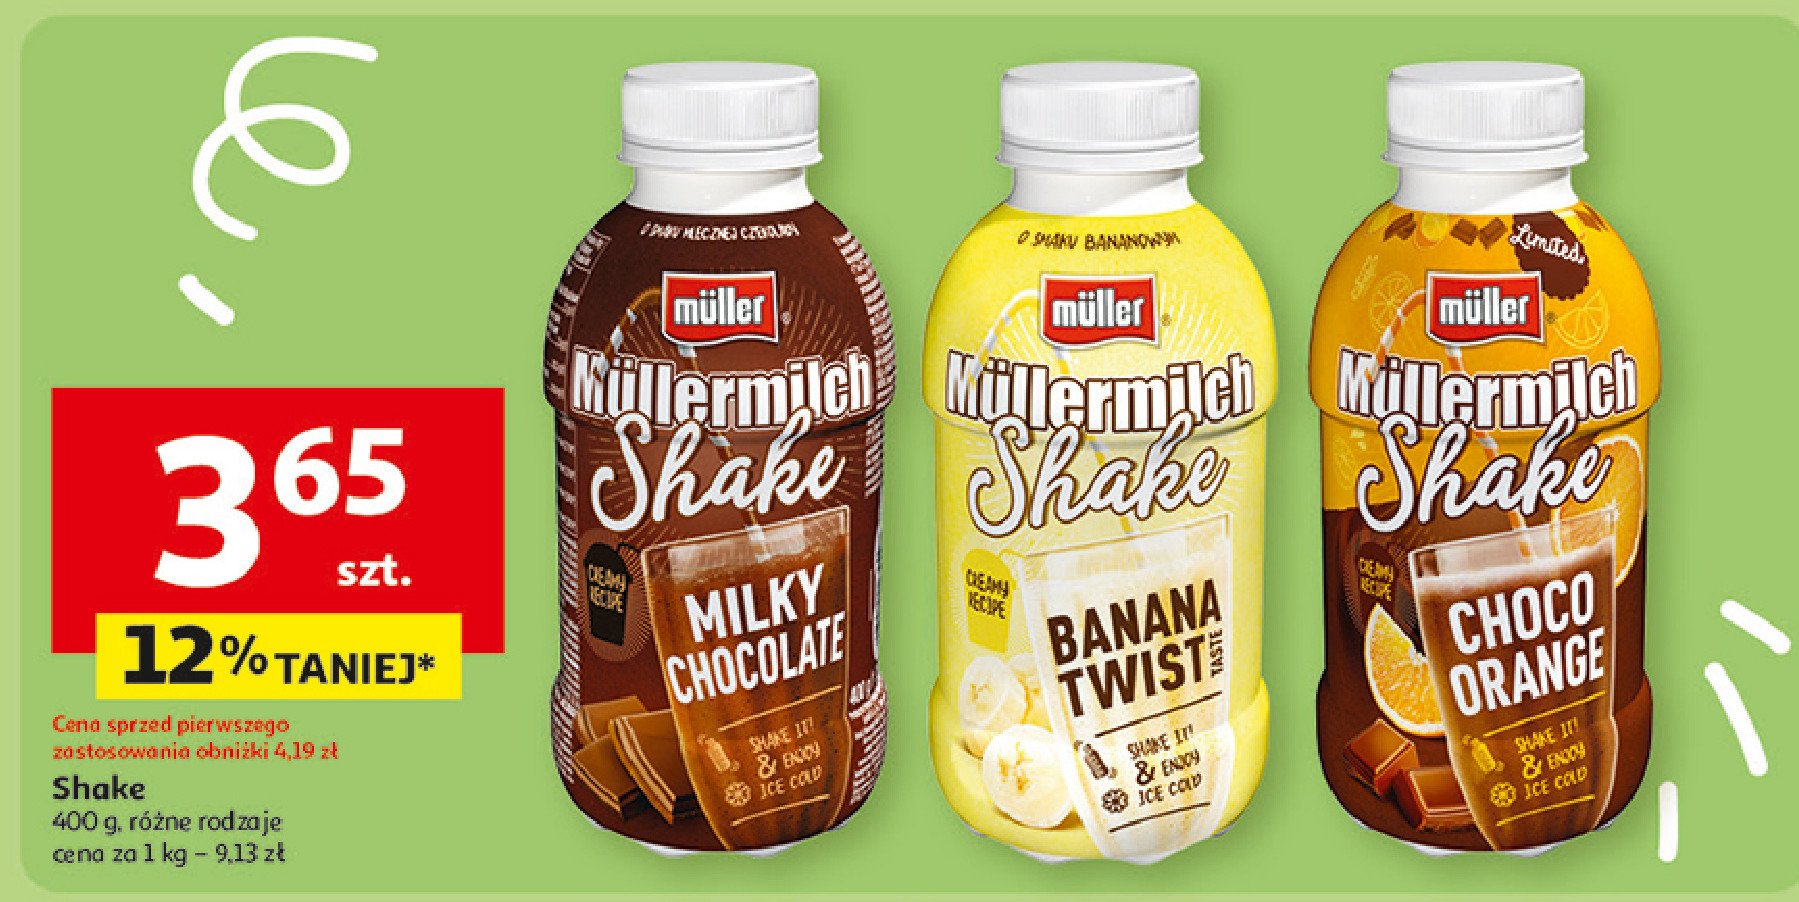 Napój mleczny banana twist Mullermilch shake promocja